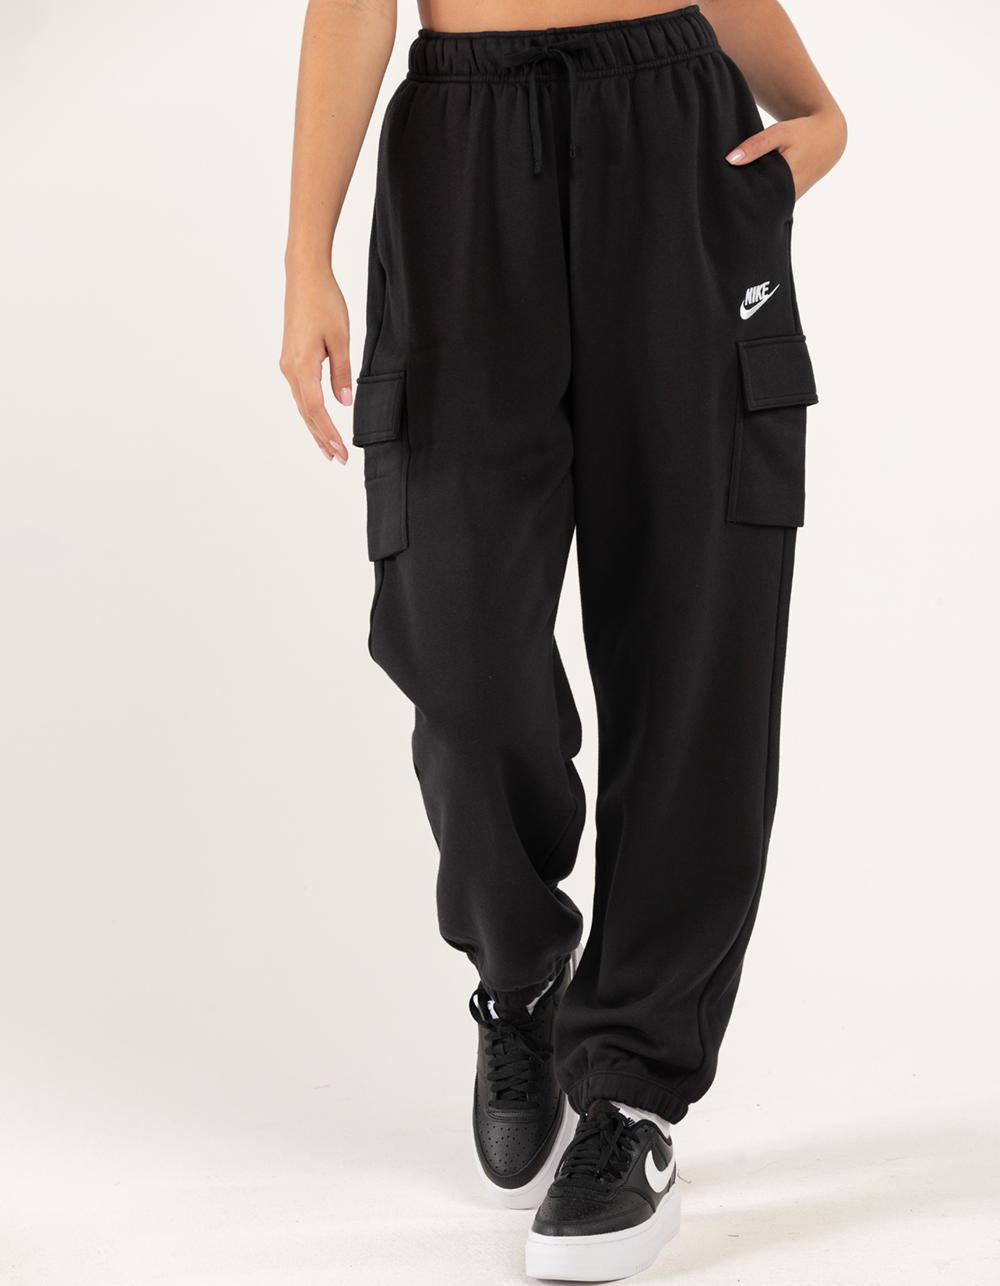  Nike Women's Sportswear Essential Fleece Joggers Black